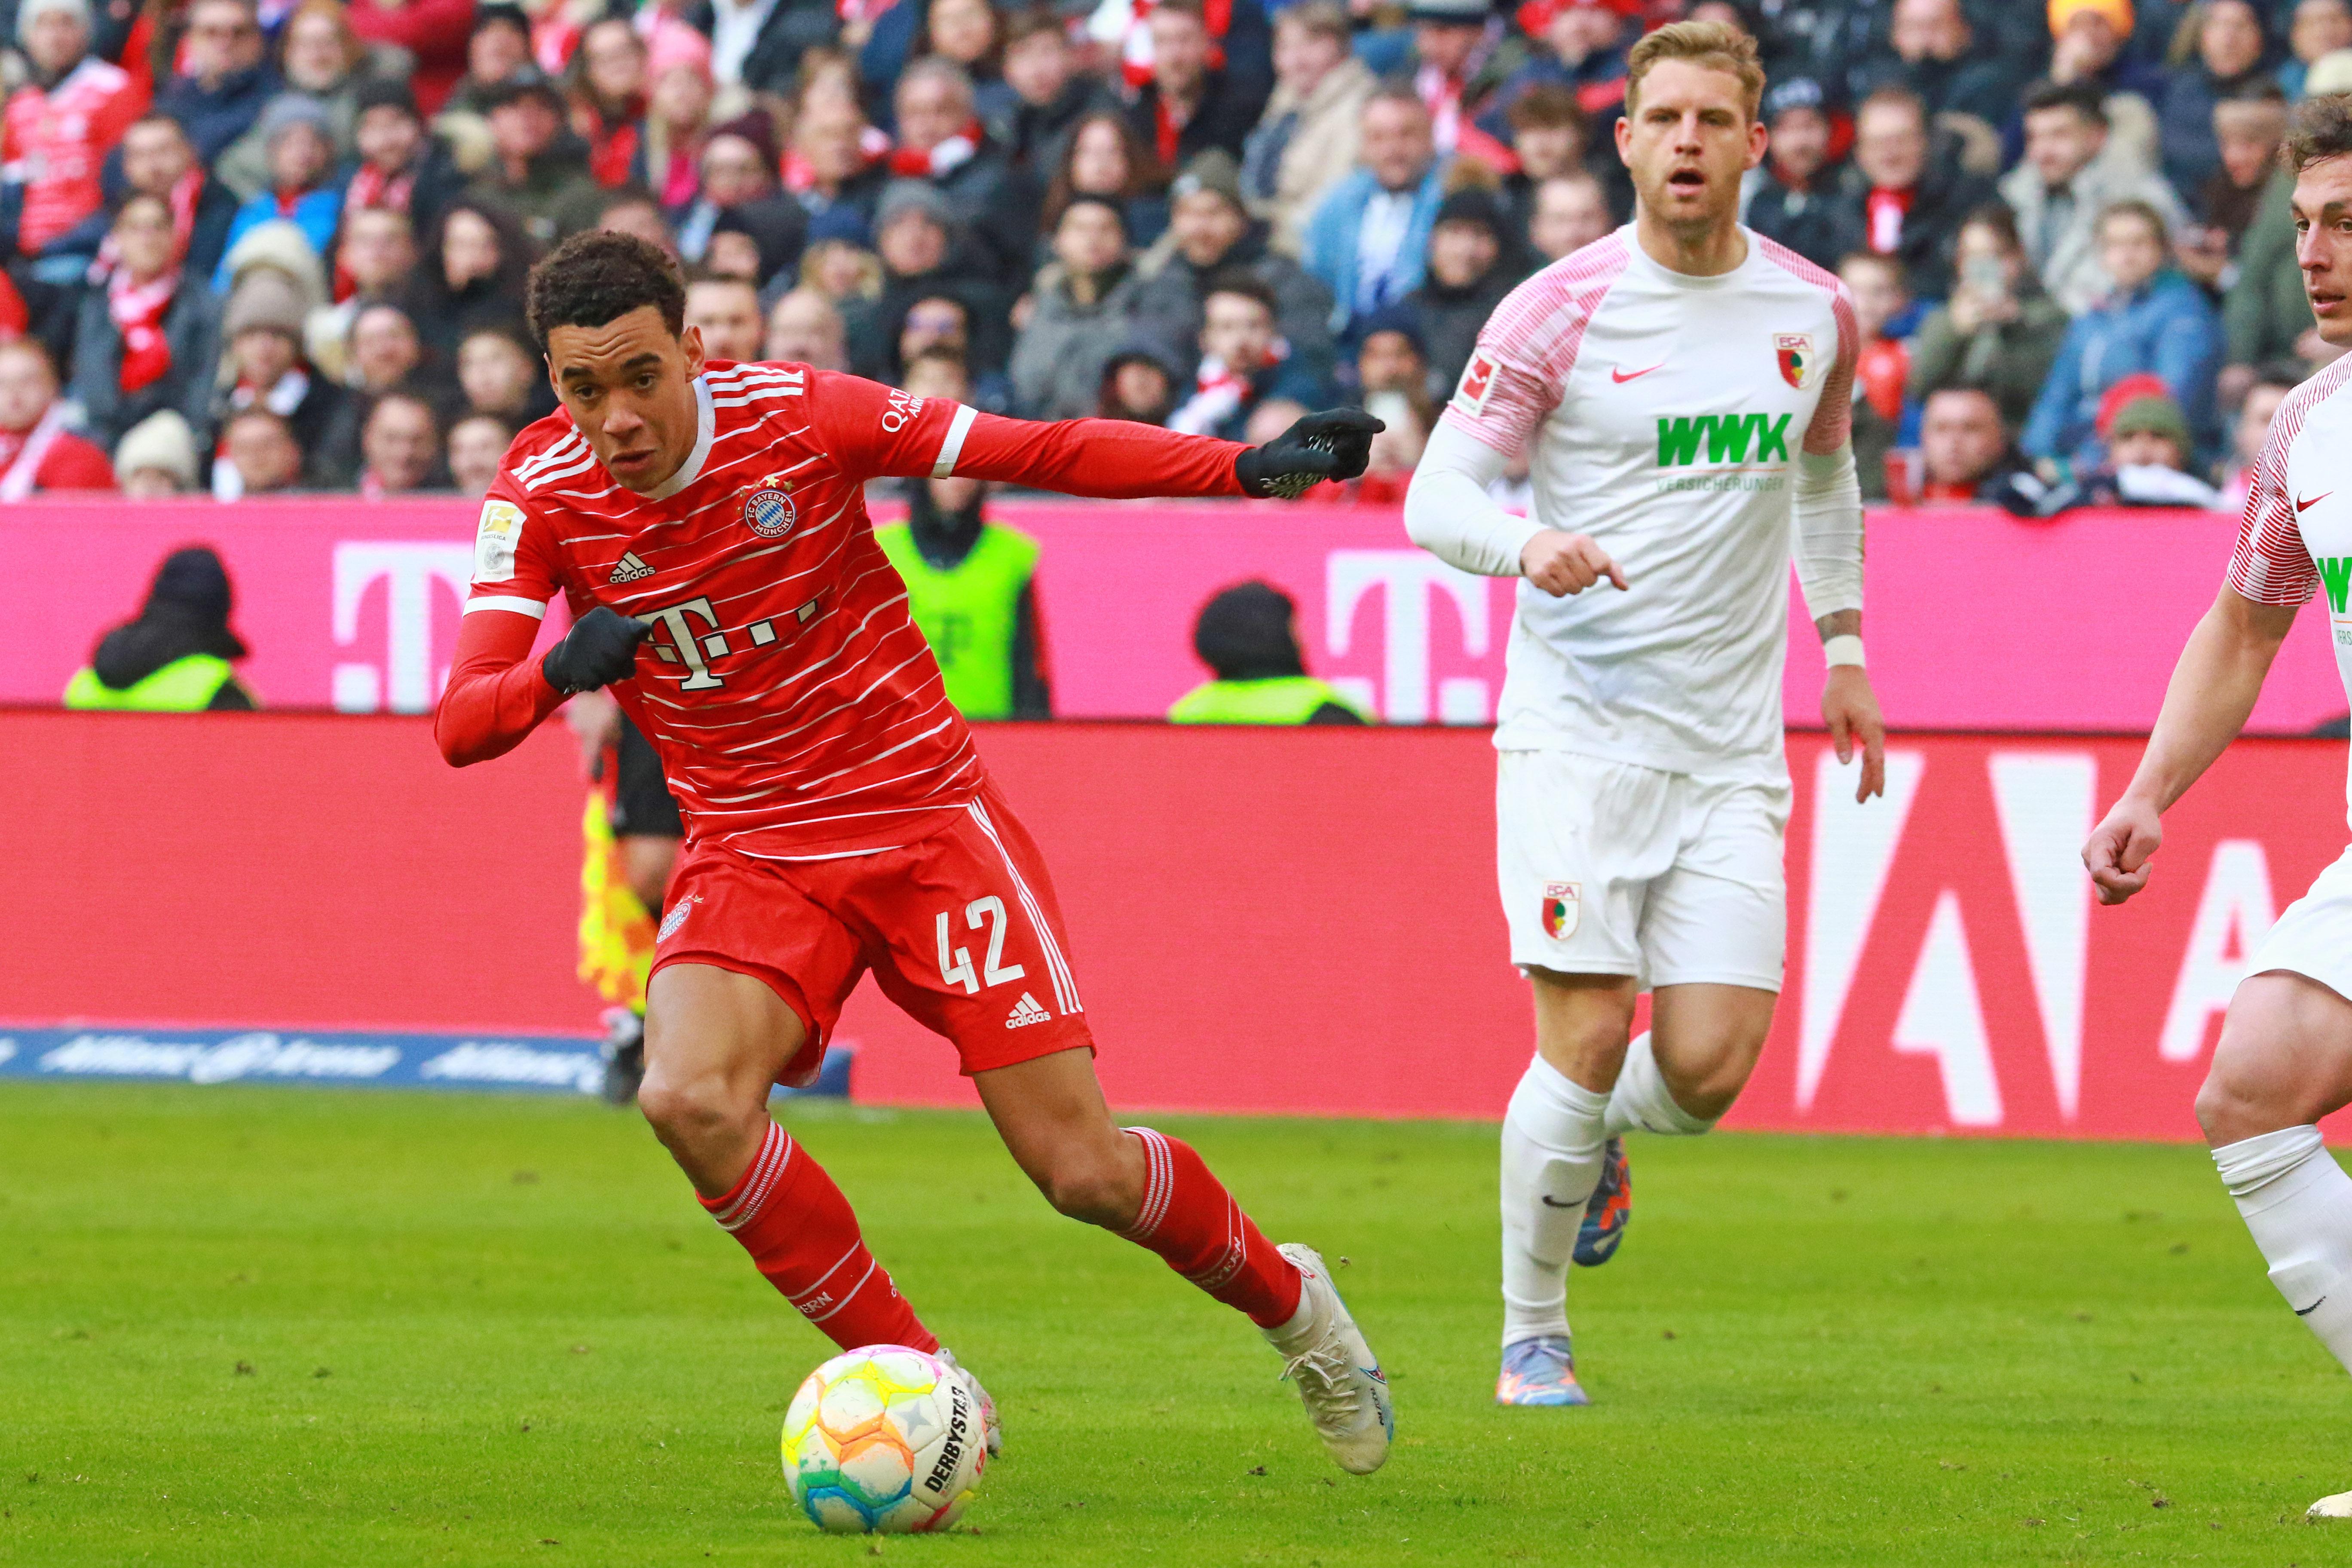 FC Bayern empfängt FC Augsburg am Sonntagabend BR24